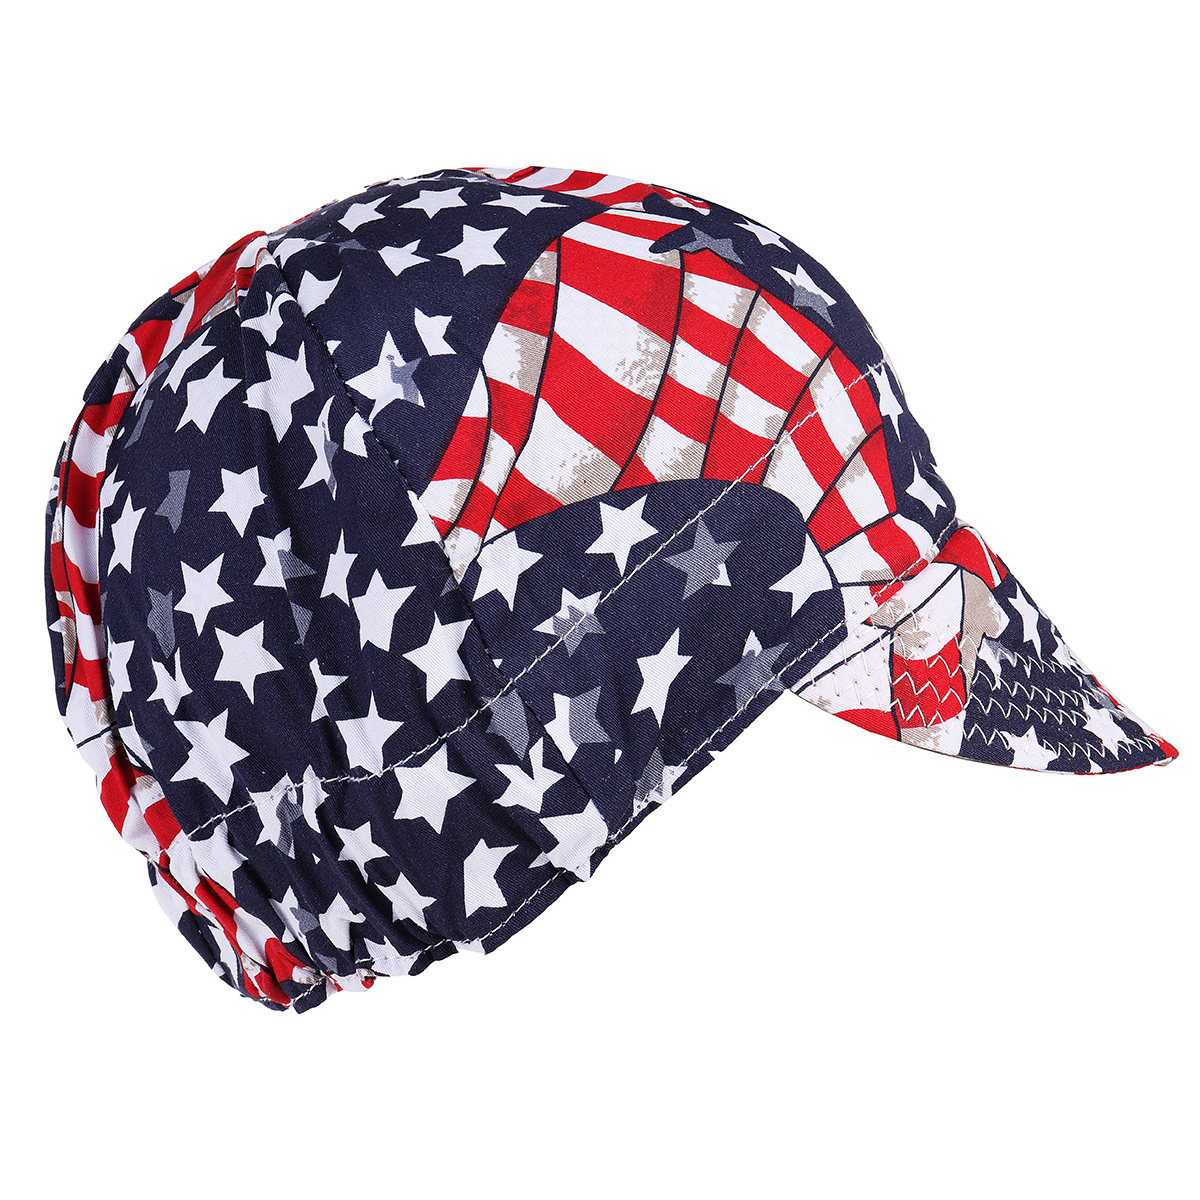 Welding-Cap-Protective-Cotton-Hat-Cap-Welding-Helmet-Hood-Tool-Sweat-Absorption-1321885-6